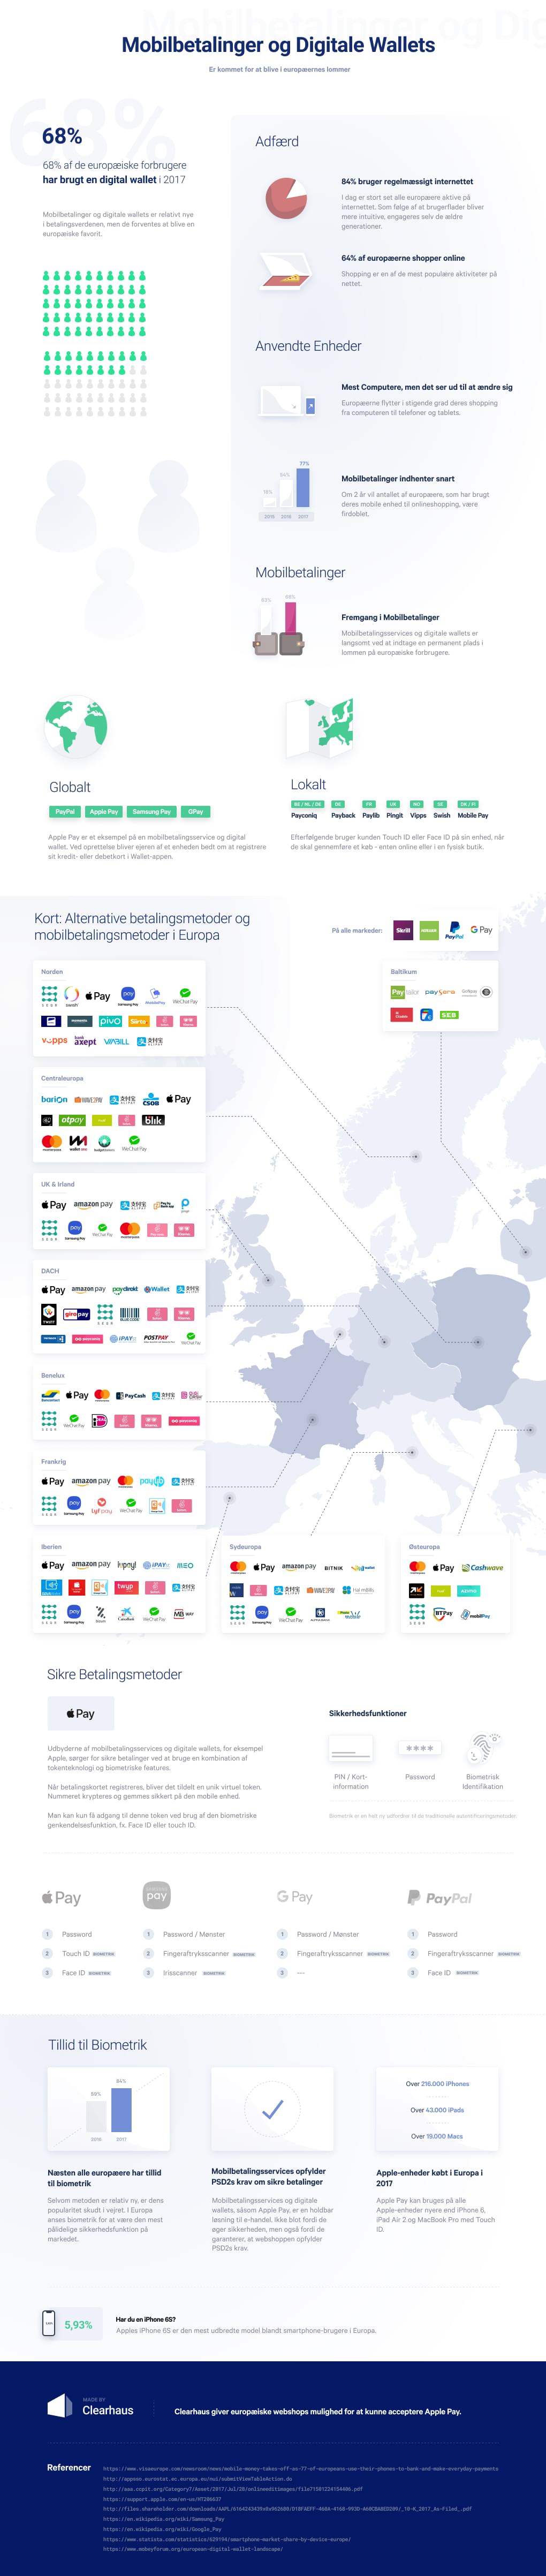 statistikker over brug af mobilbetalingstjenester i Europa samt oversigt over forskellige udbydere